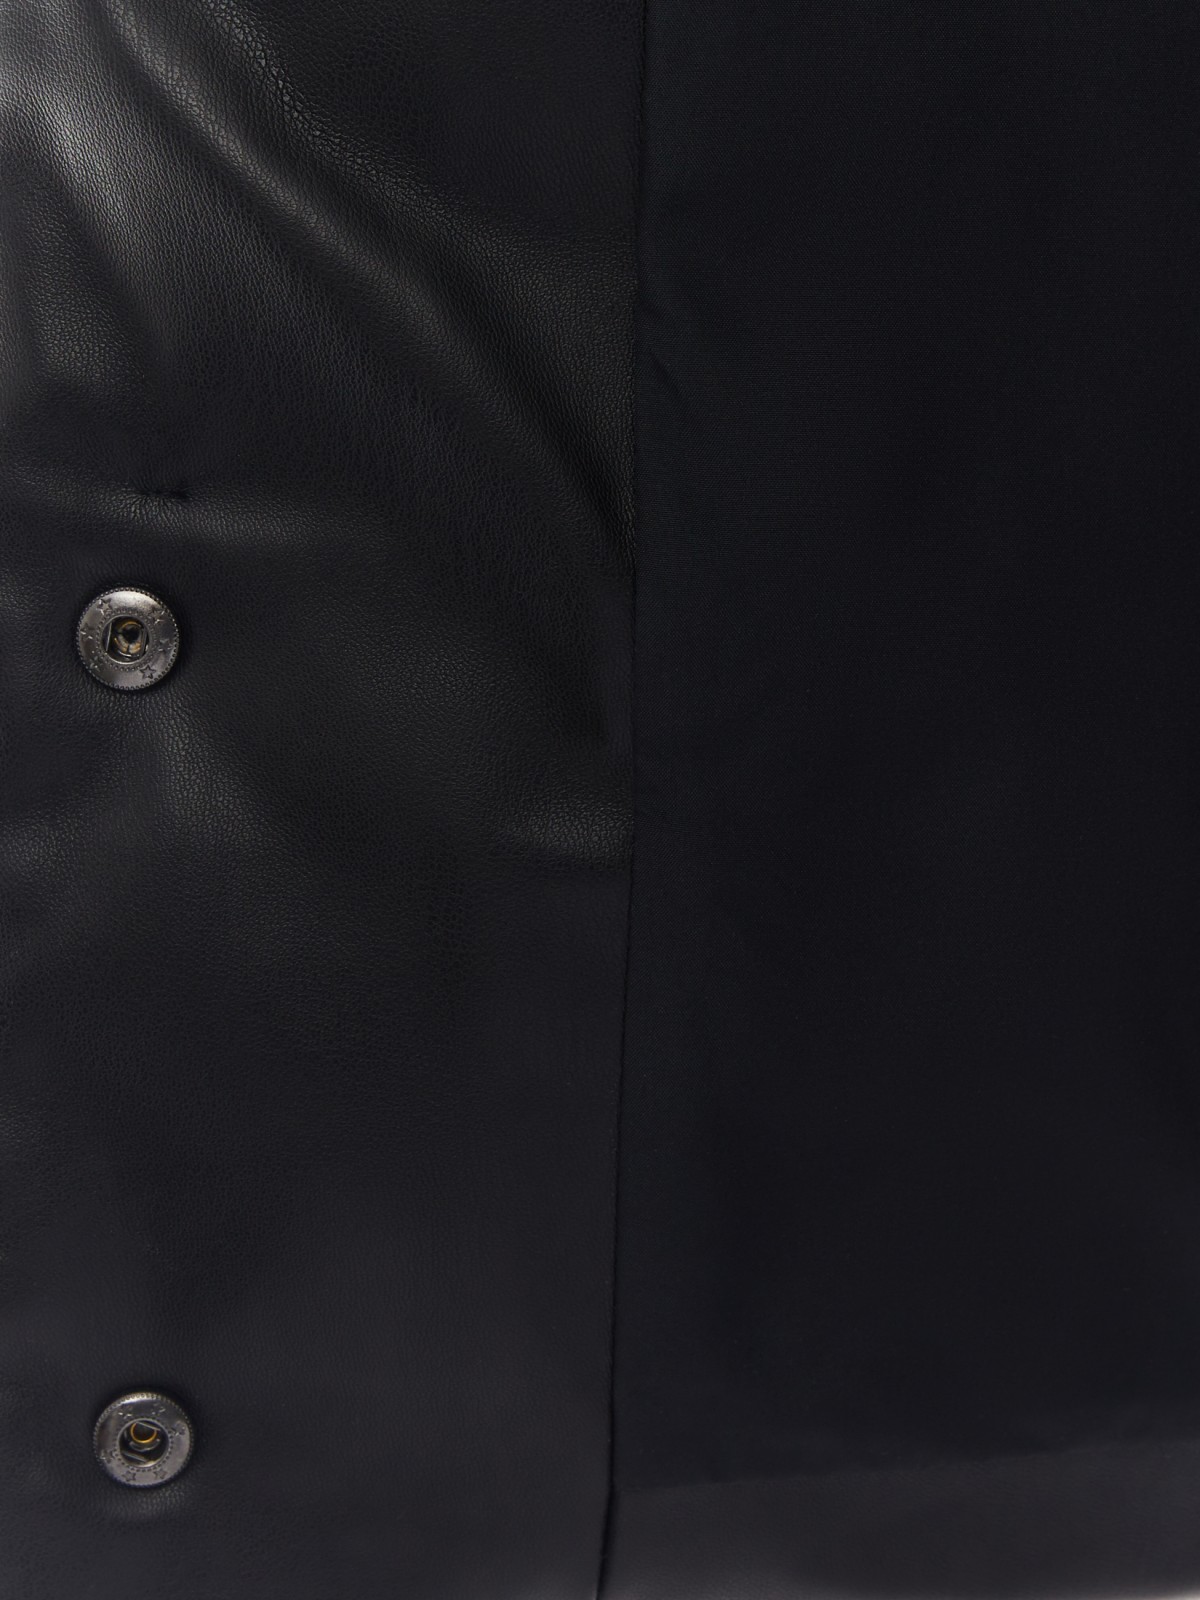 Тёплая стёганая дутая куртка из экокожи с высоким воротником zolla 02412516F034, цвет черный, размер XS - фото 5